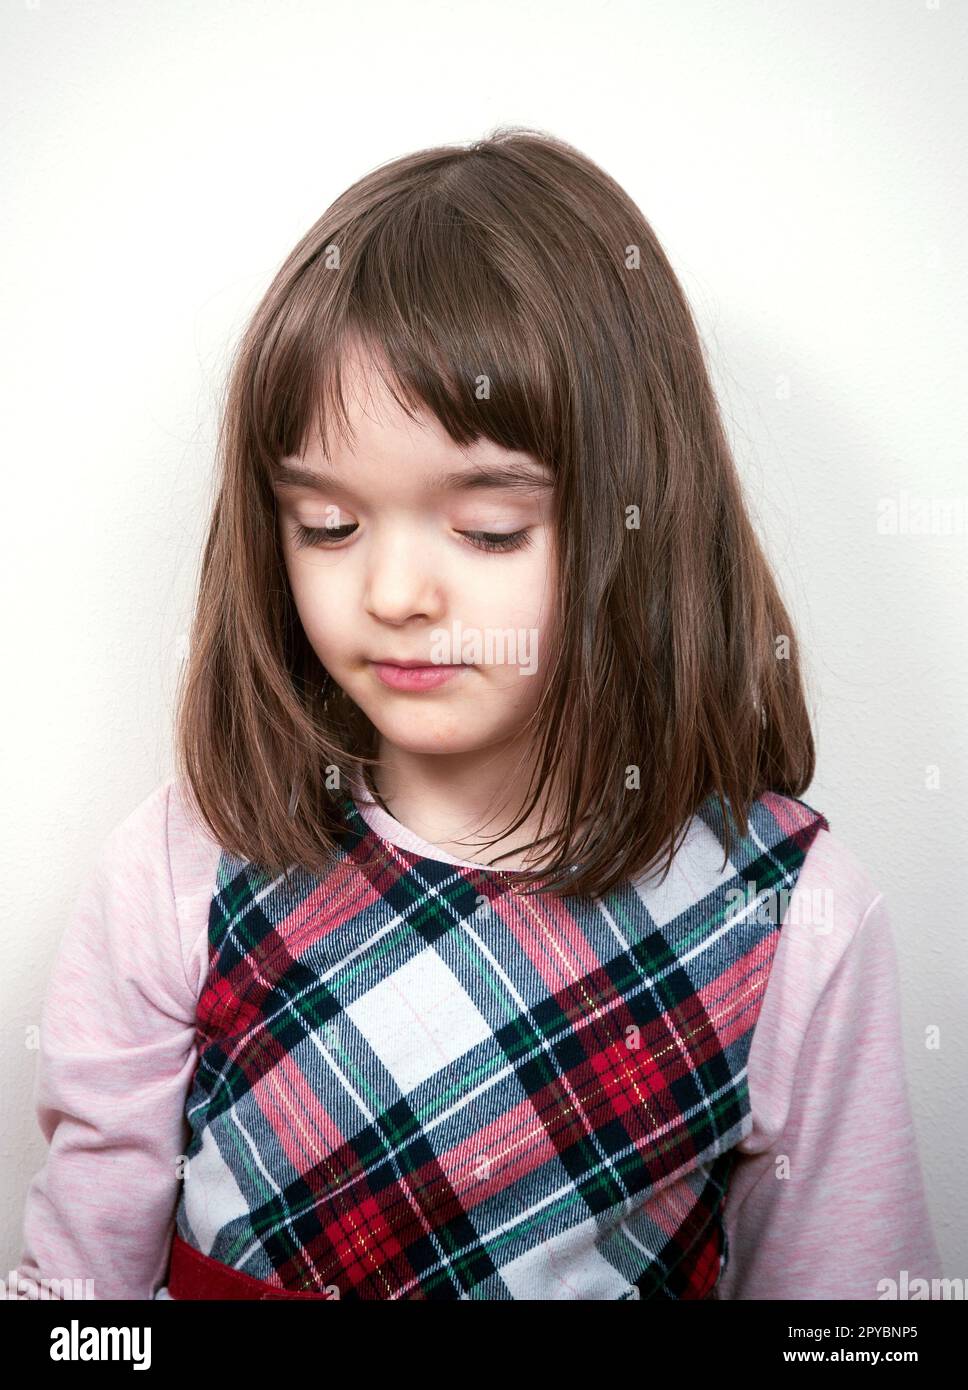 Little lovely girl portrait at home Stock Photo